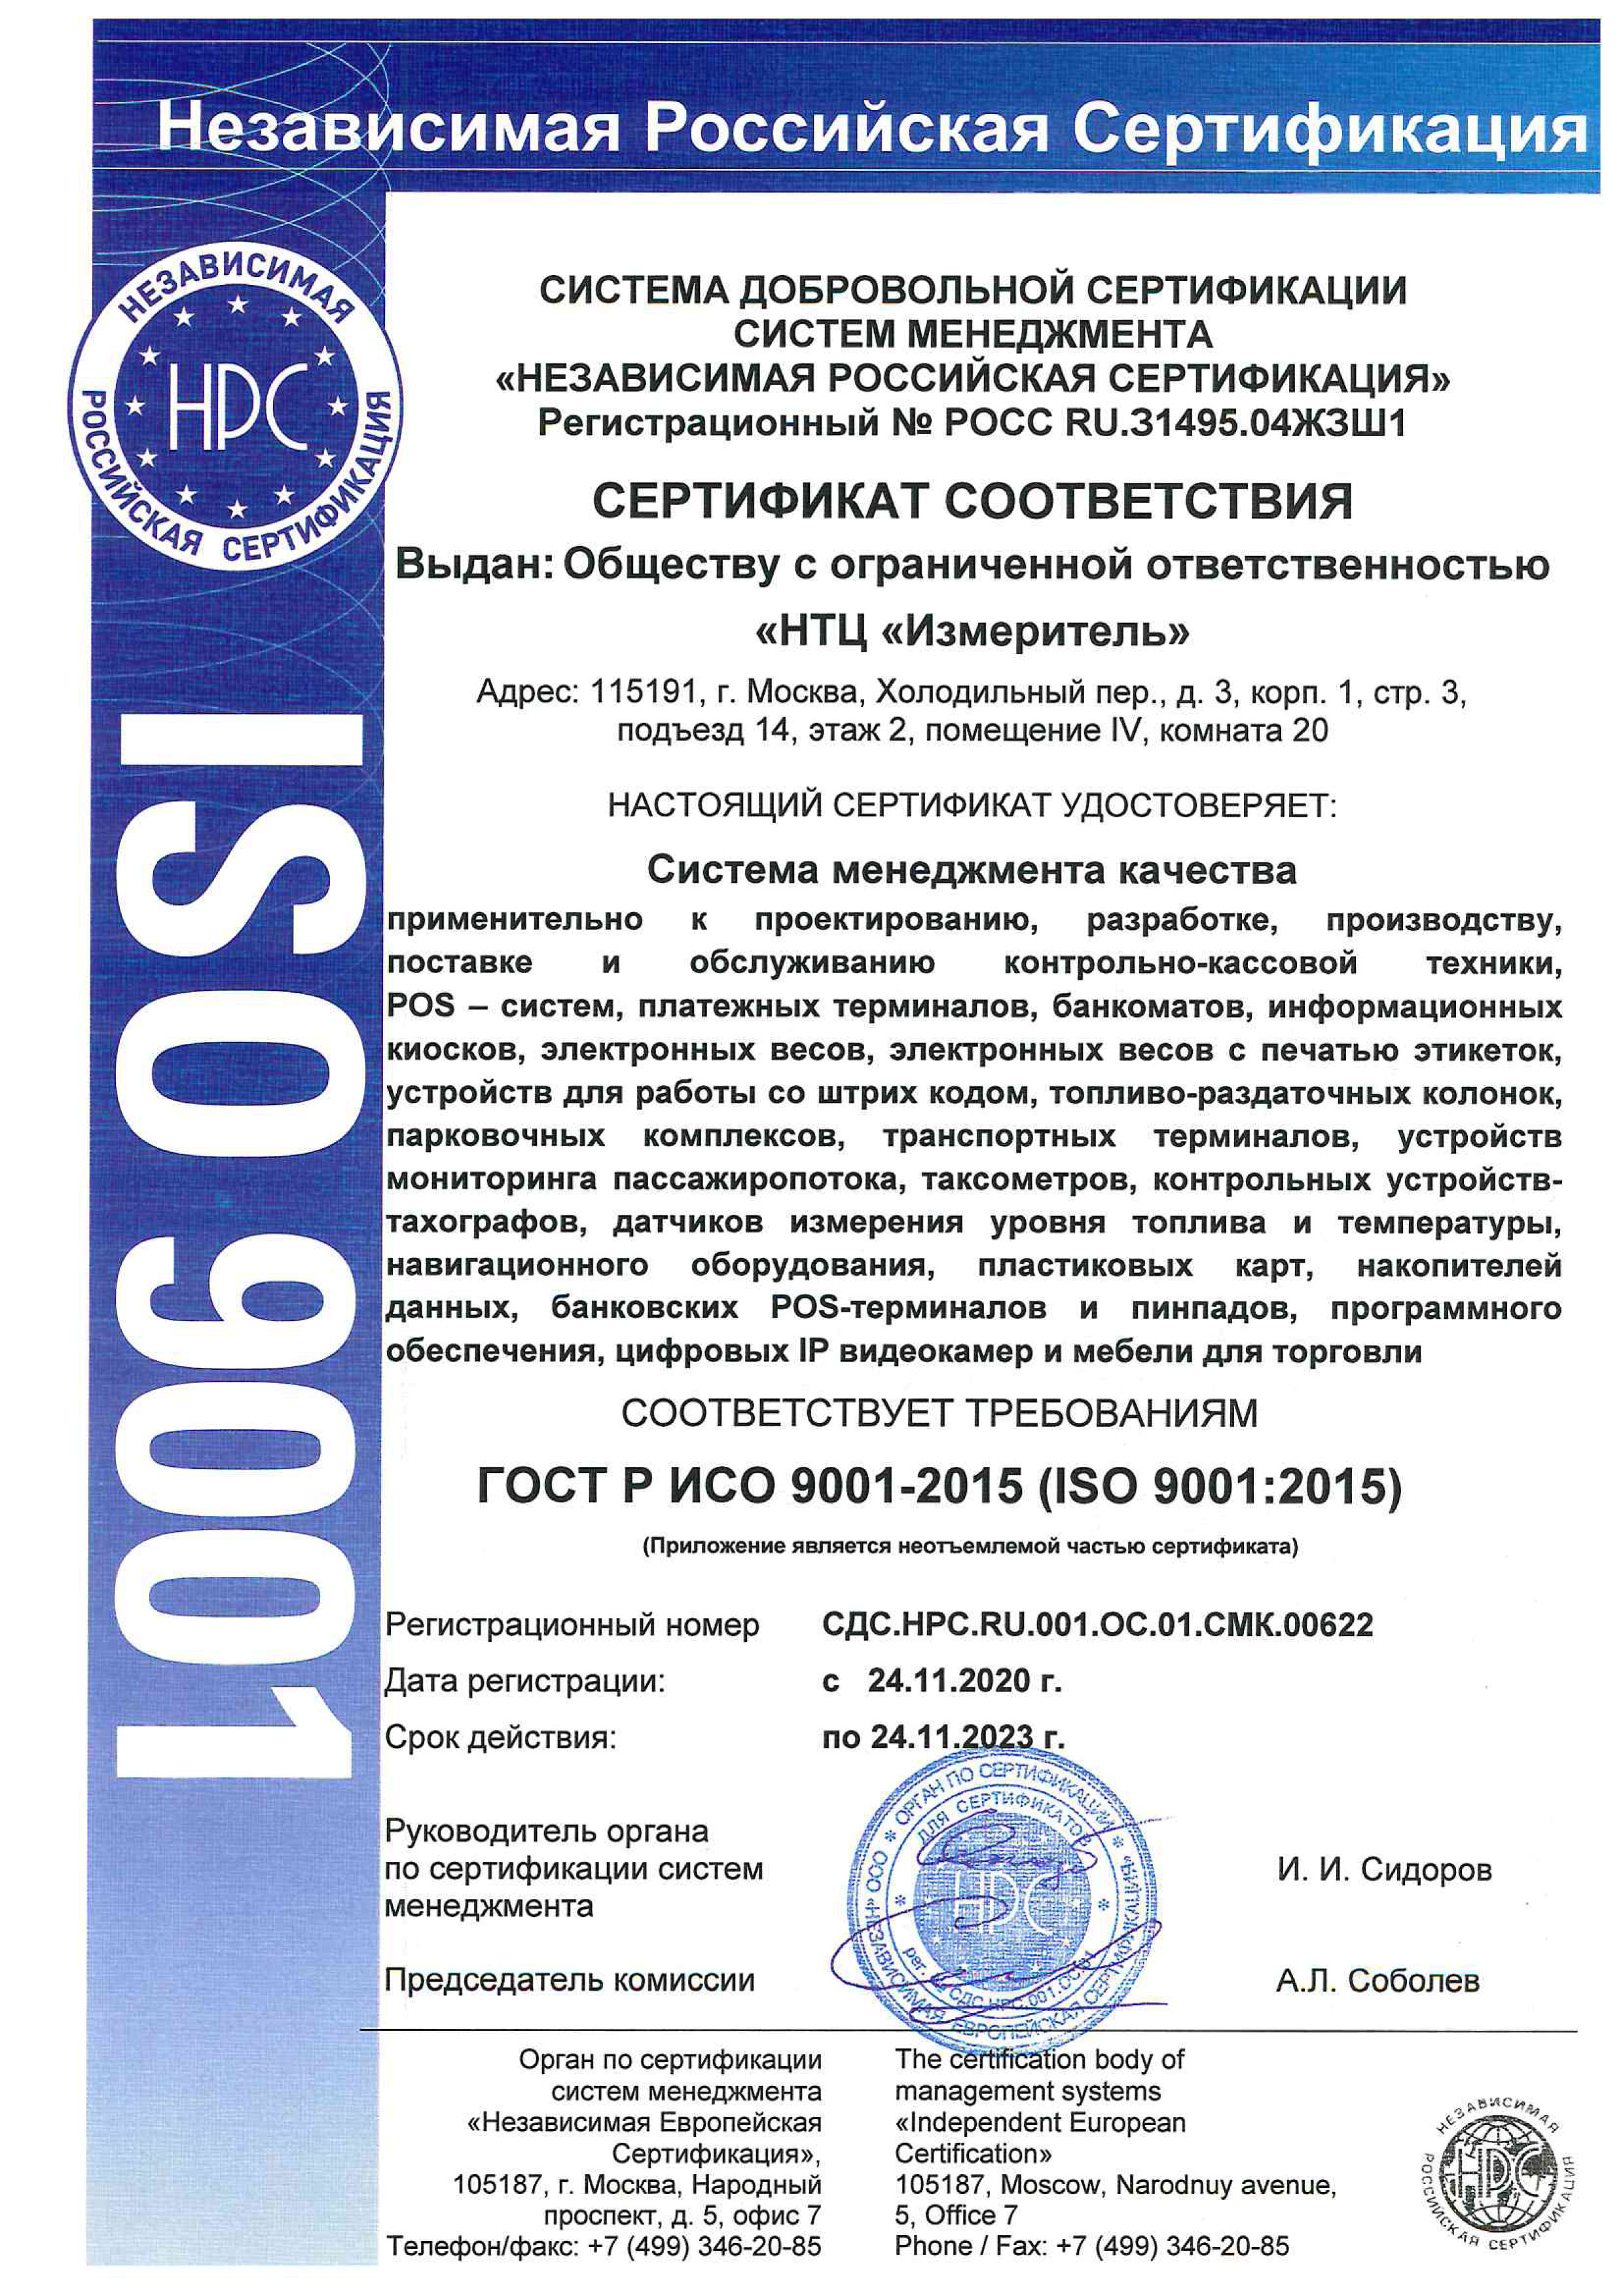 Сертификат соответствия системе менеджмента качества ГОСТ Р ИСО 9001-2015